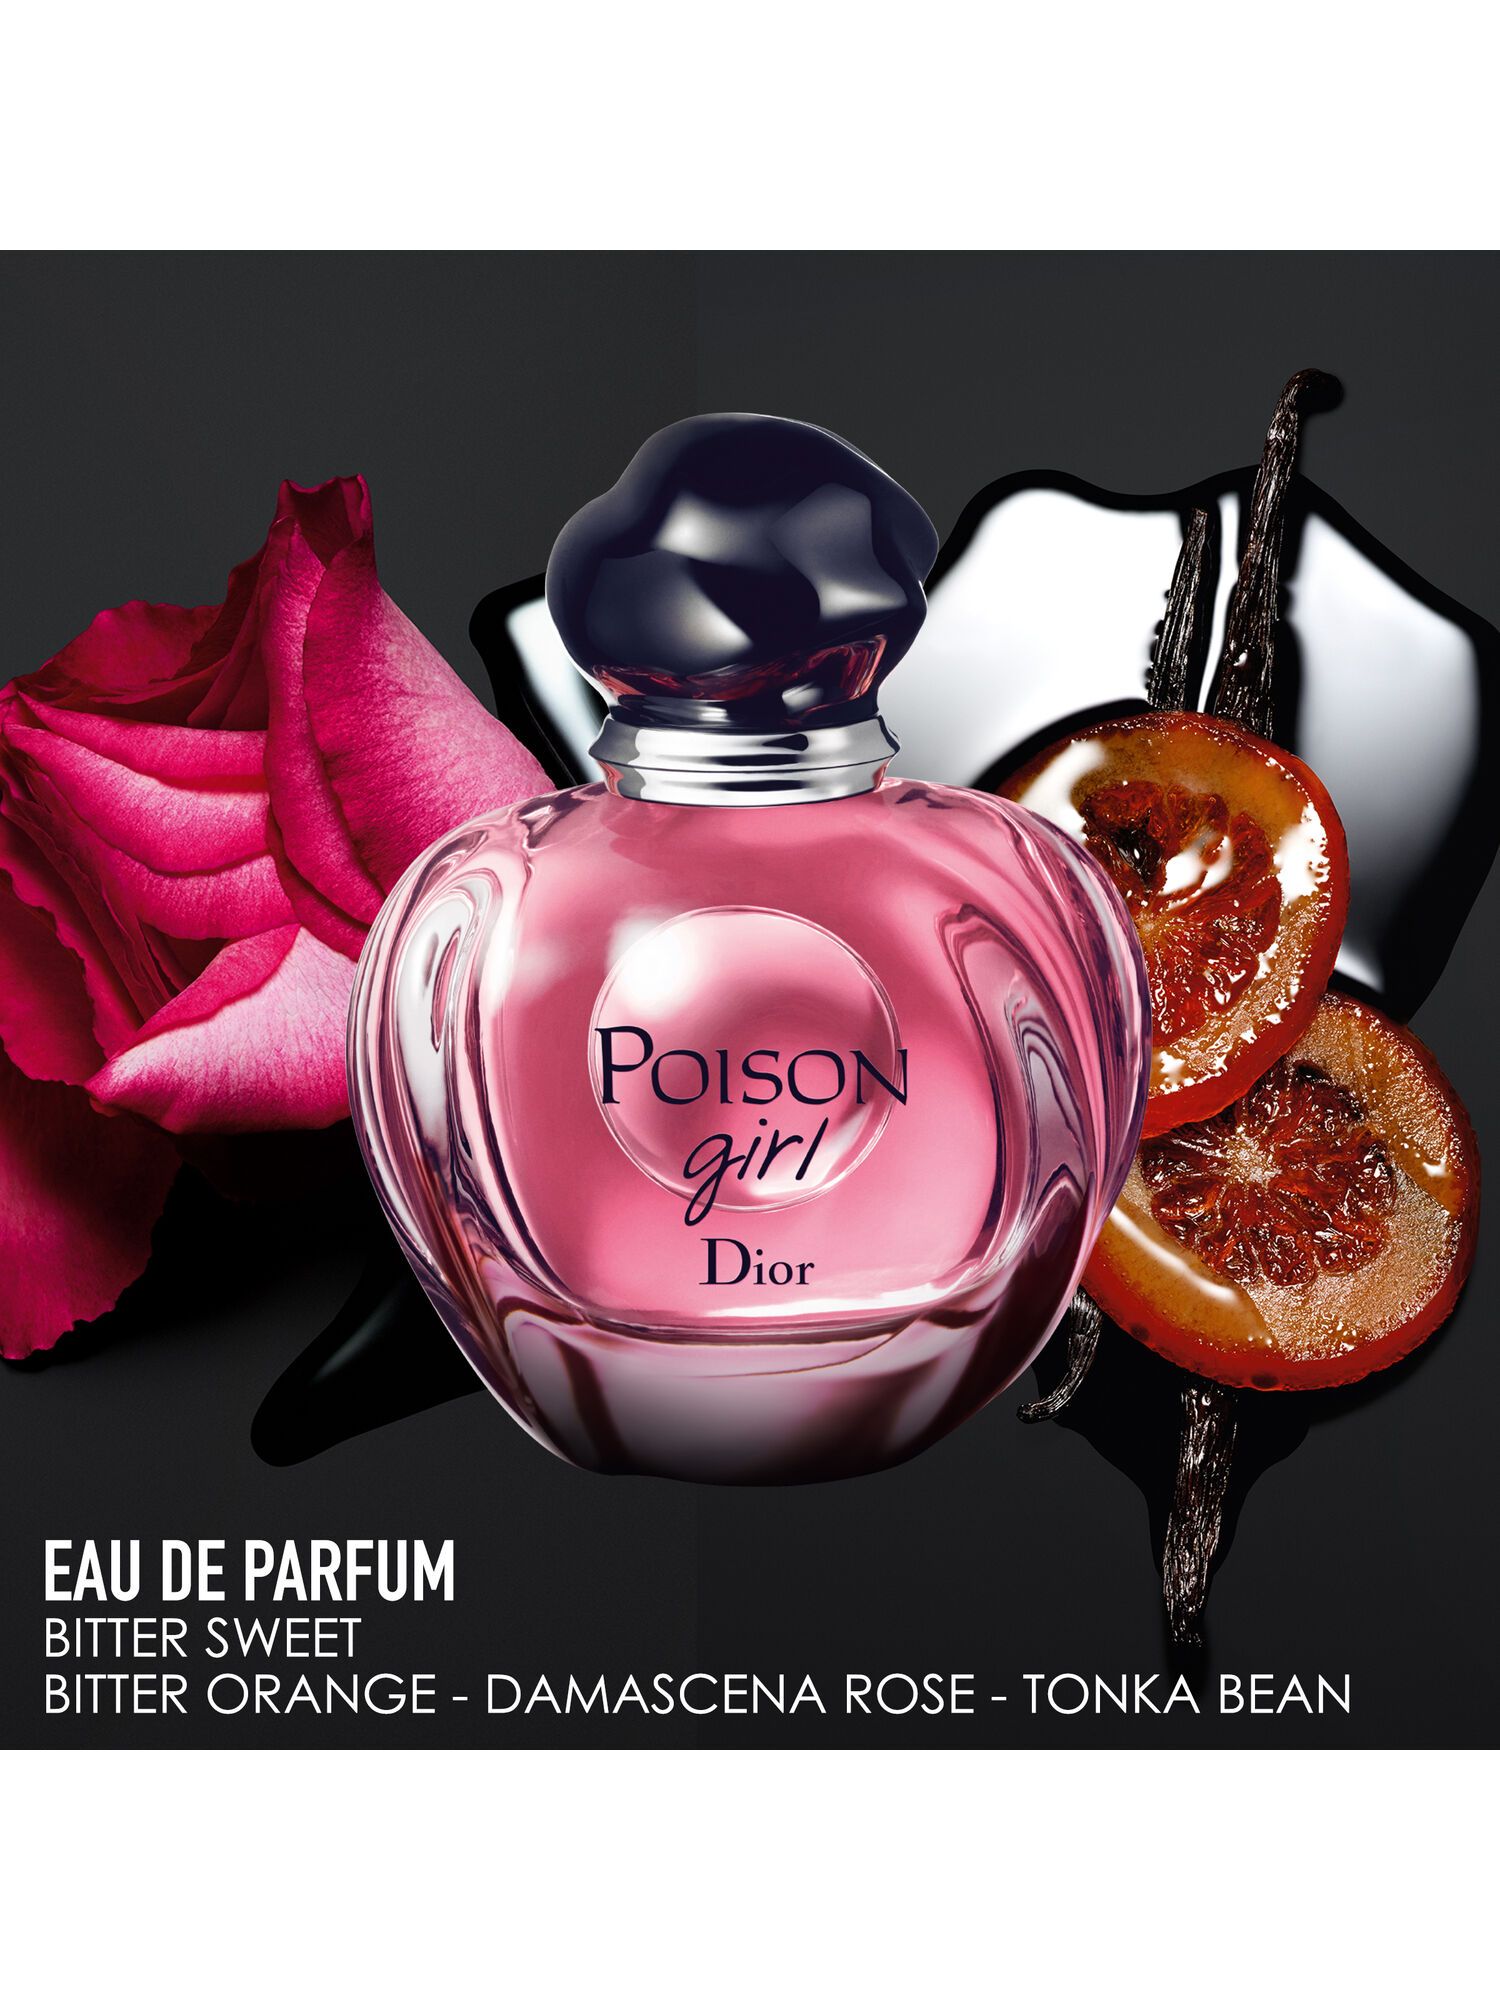 DIOR Poison Girl Eau de Parfum, 30ml at John Lewis & Partners